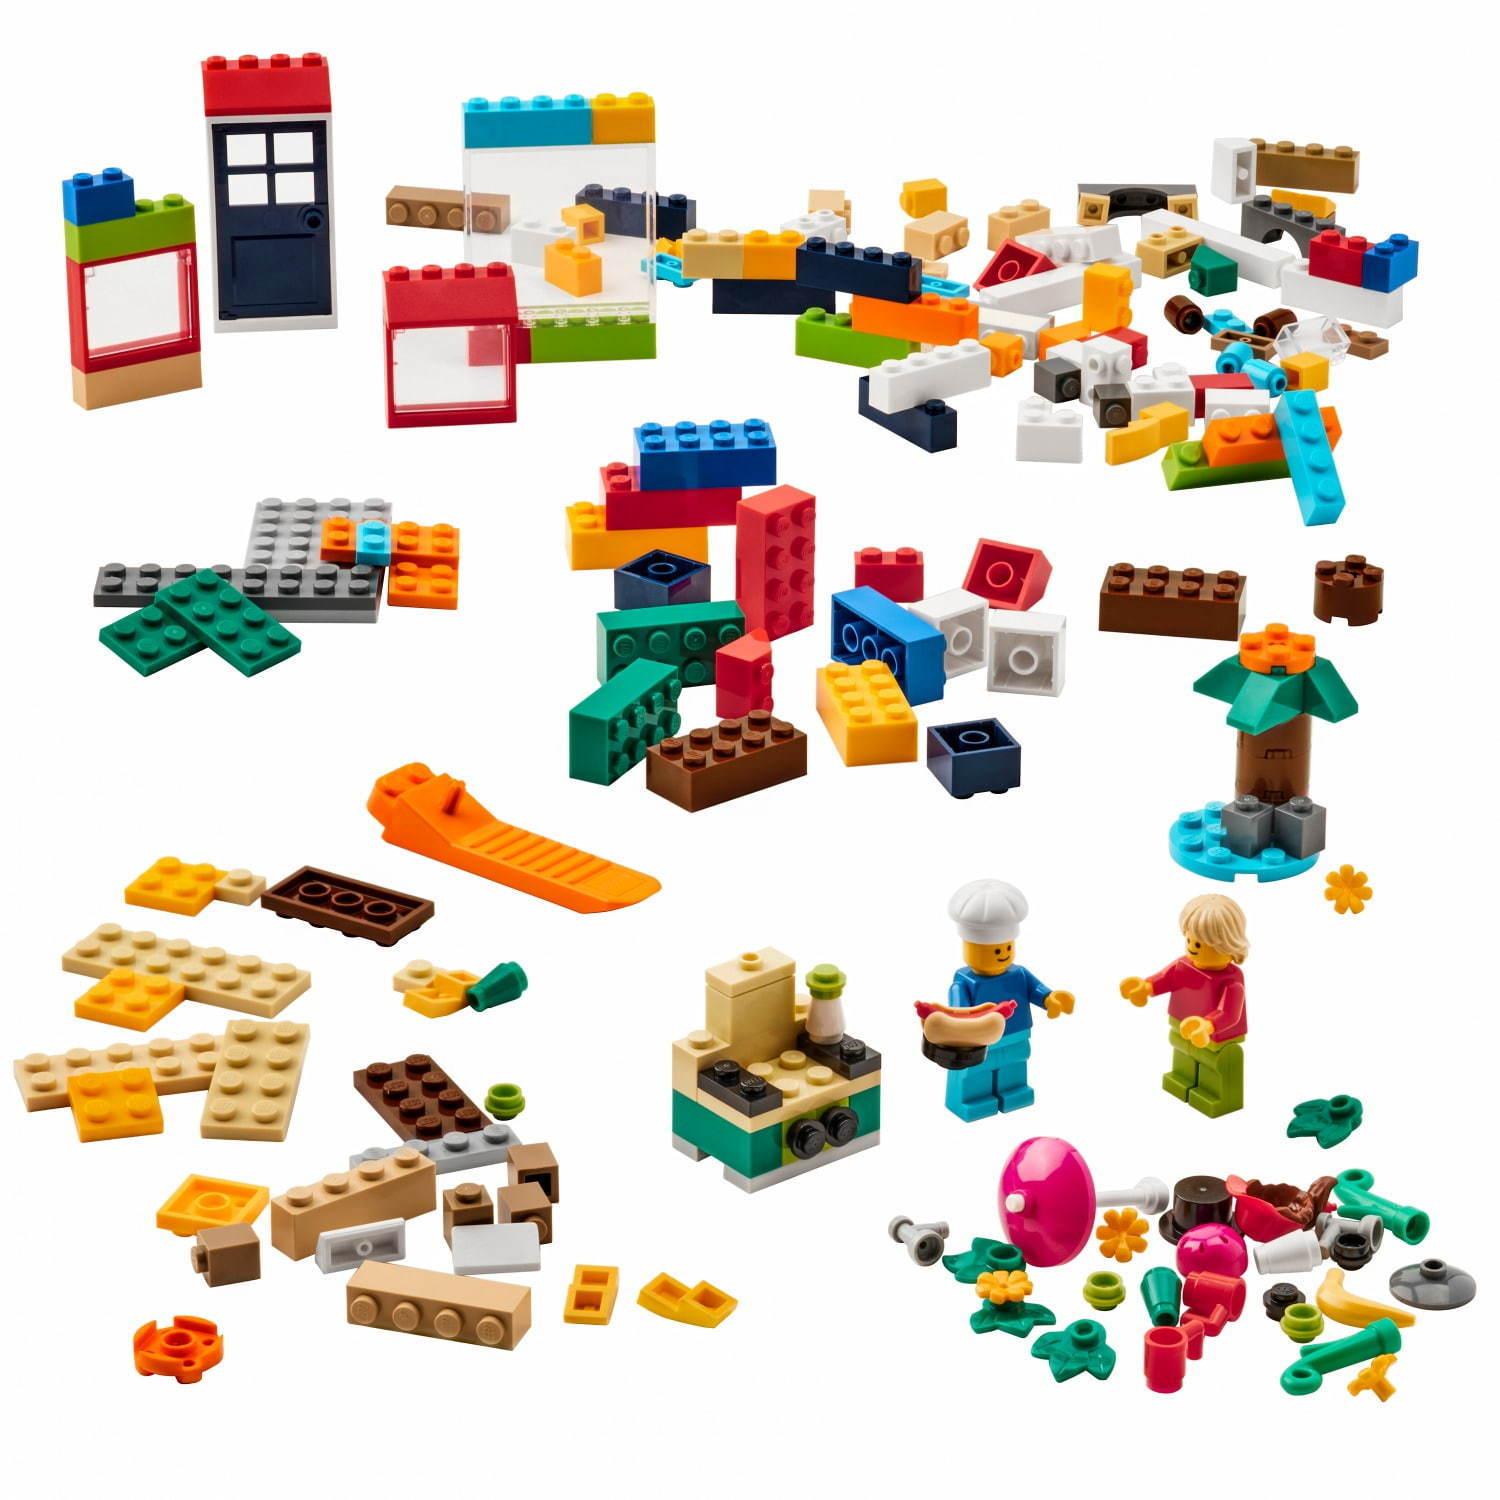 イケア×レゴグループのコラボ収納ボックス、“レゴブロック”型の全4サイズ&他レゴ製品と連結も可能 コピー